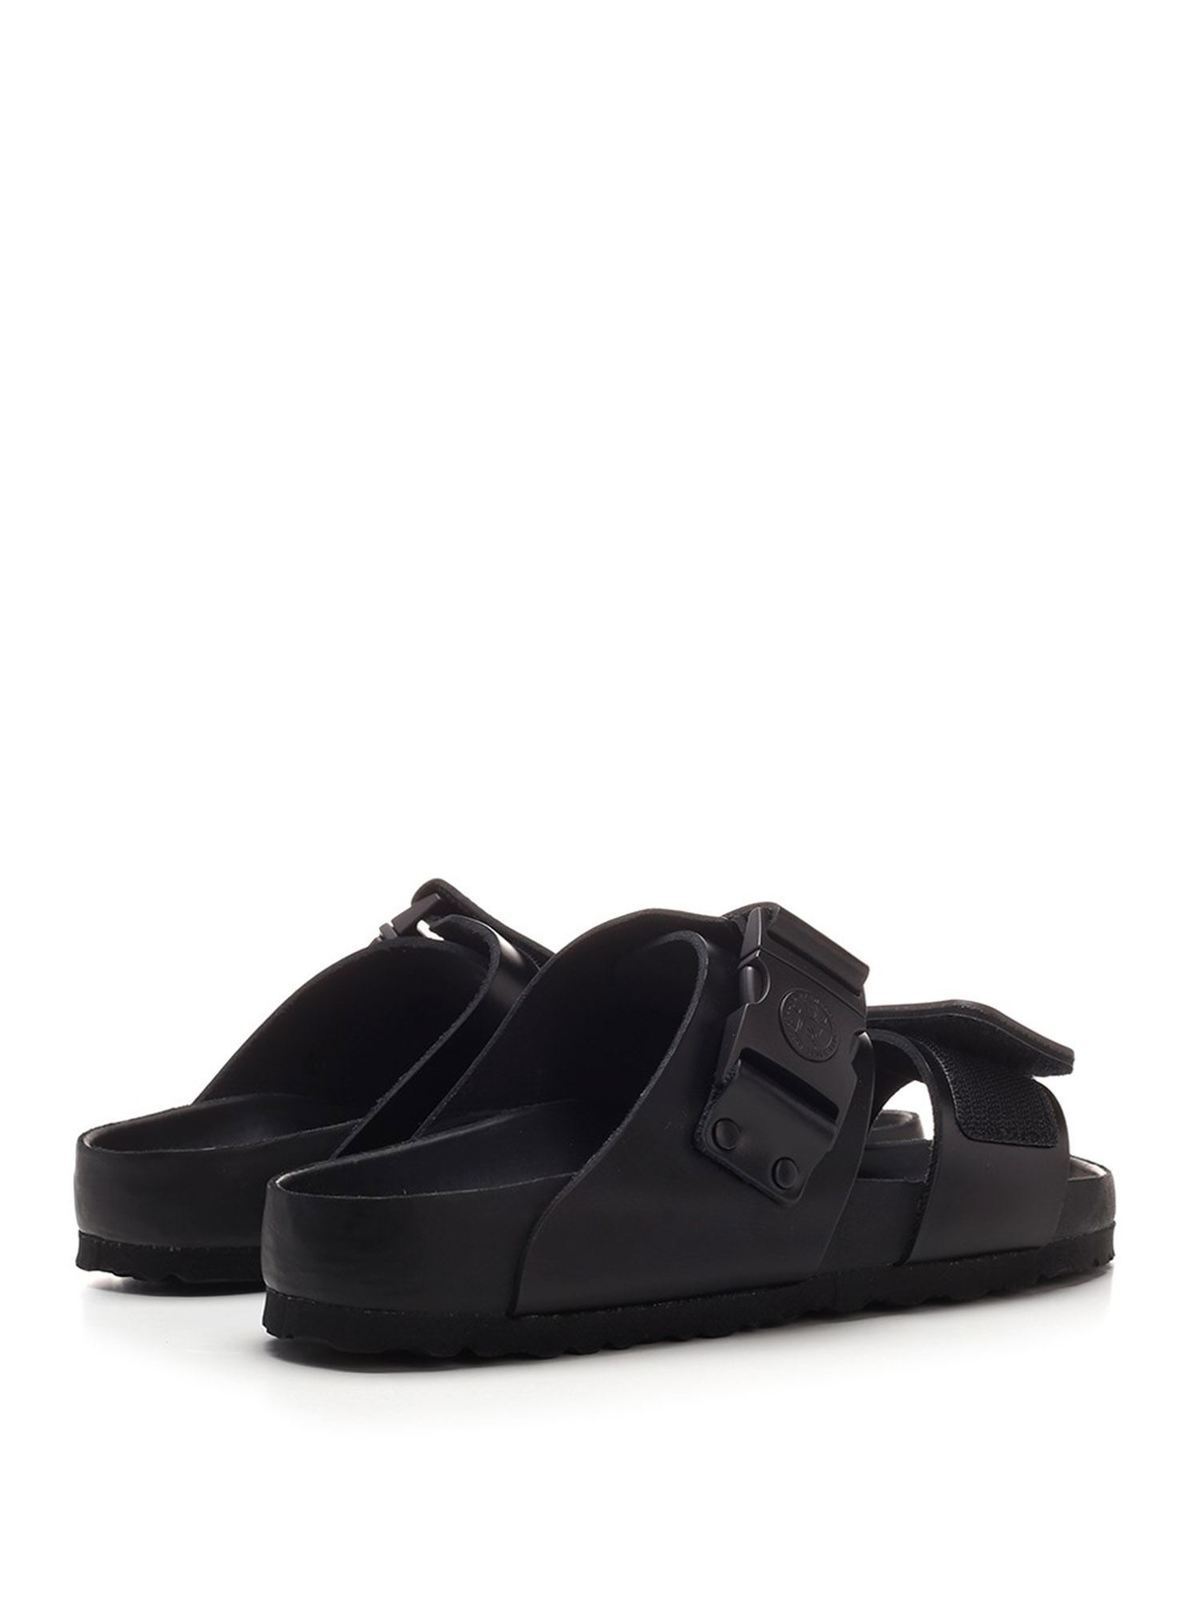 Sandals Rick Owens Hun - Rotterdam sandals in black - BM21S68102085709